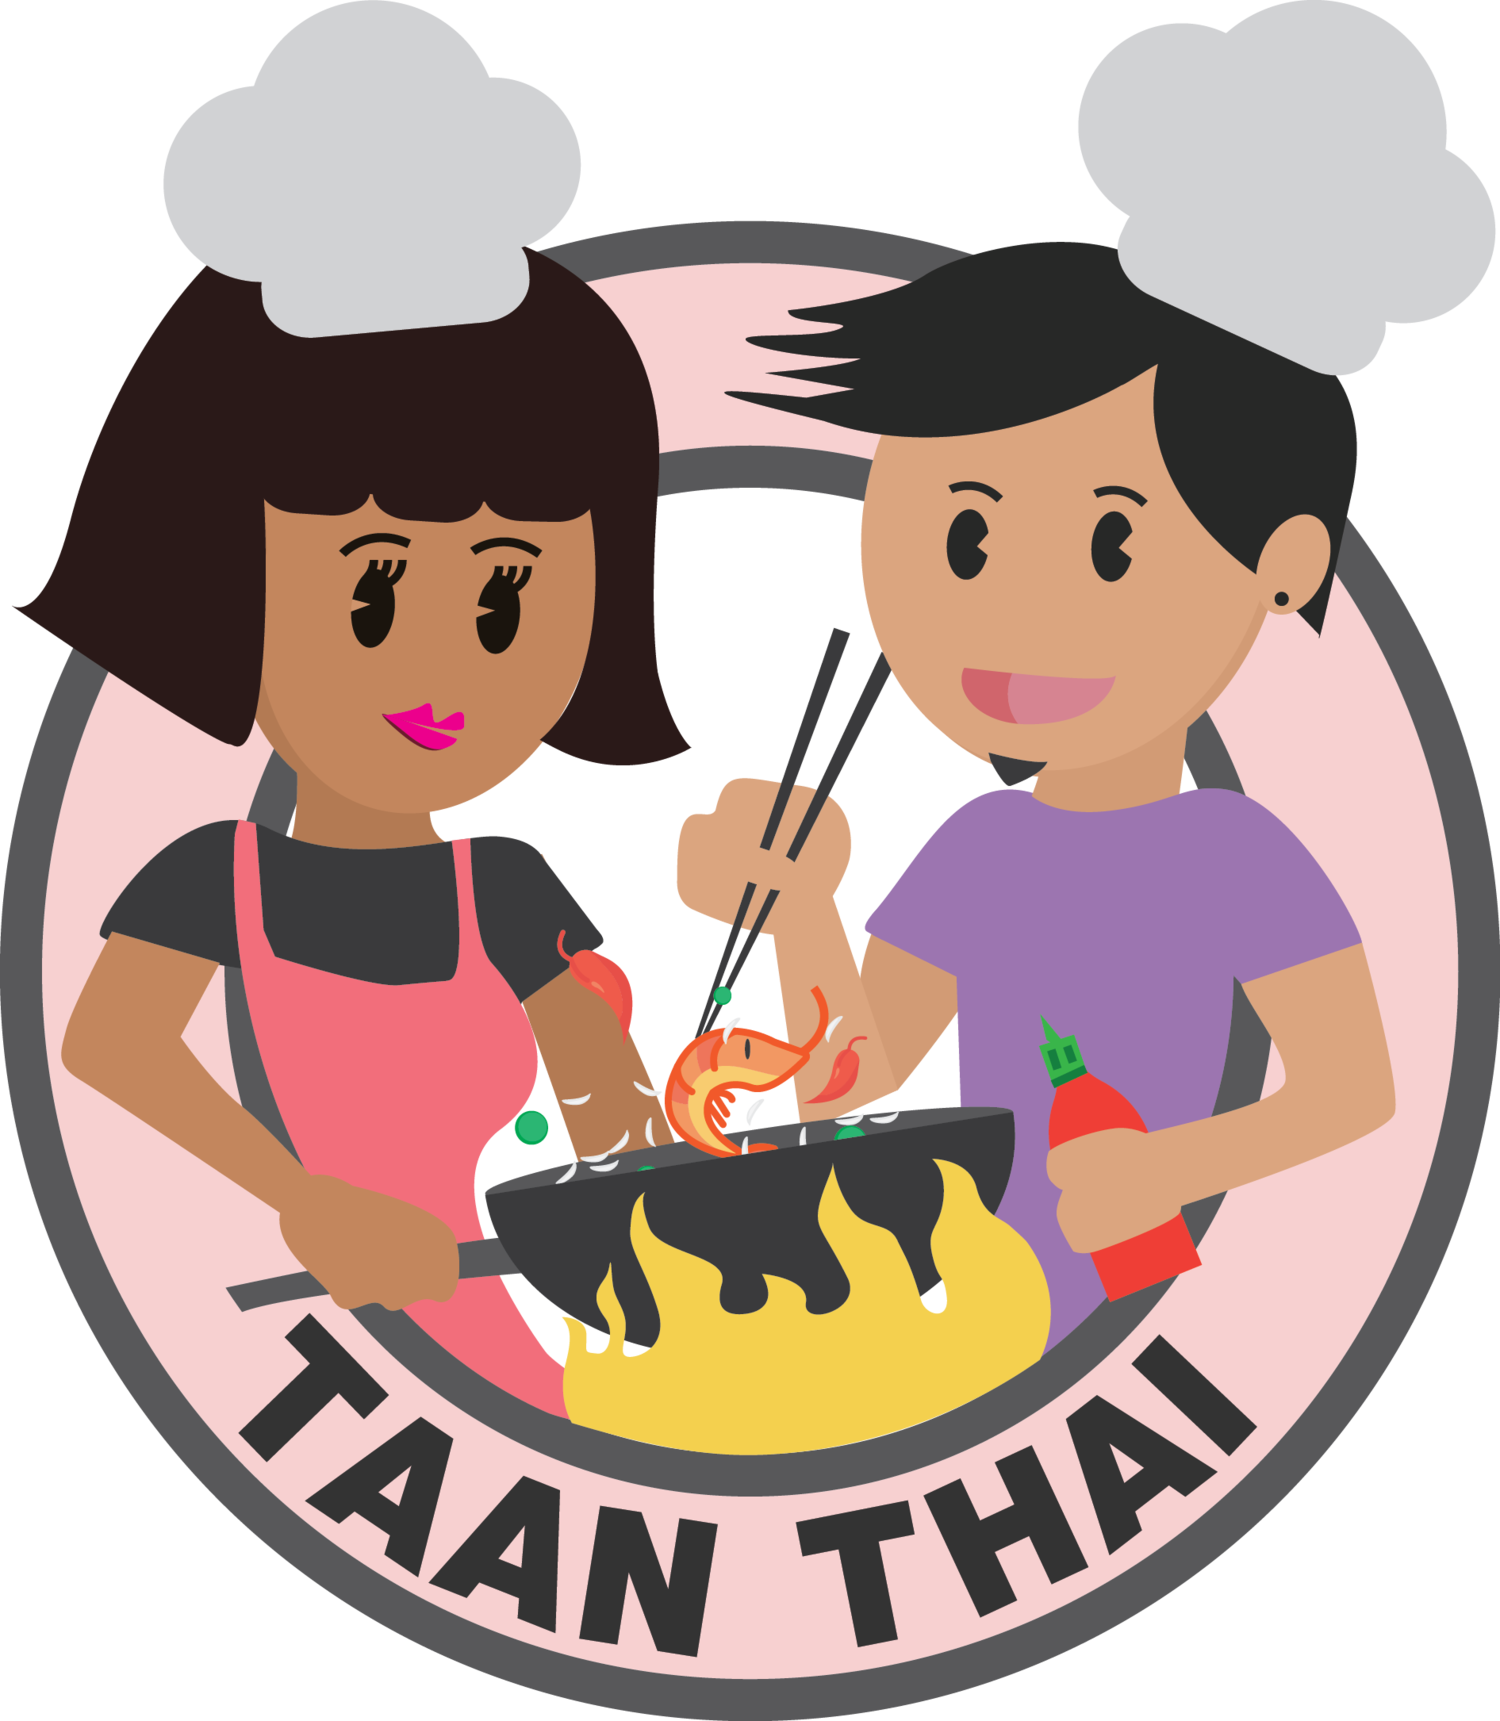 Taan Thai 